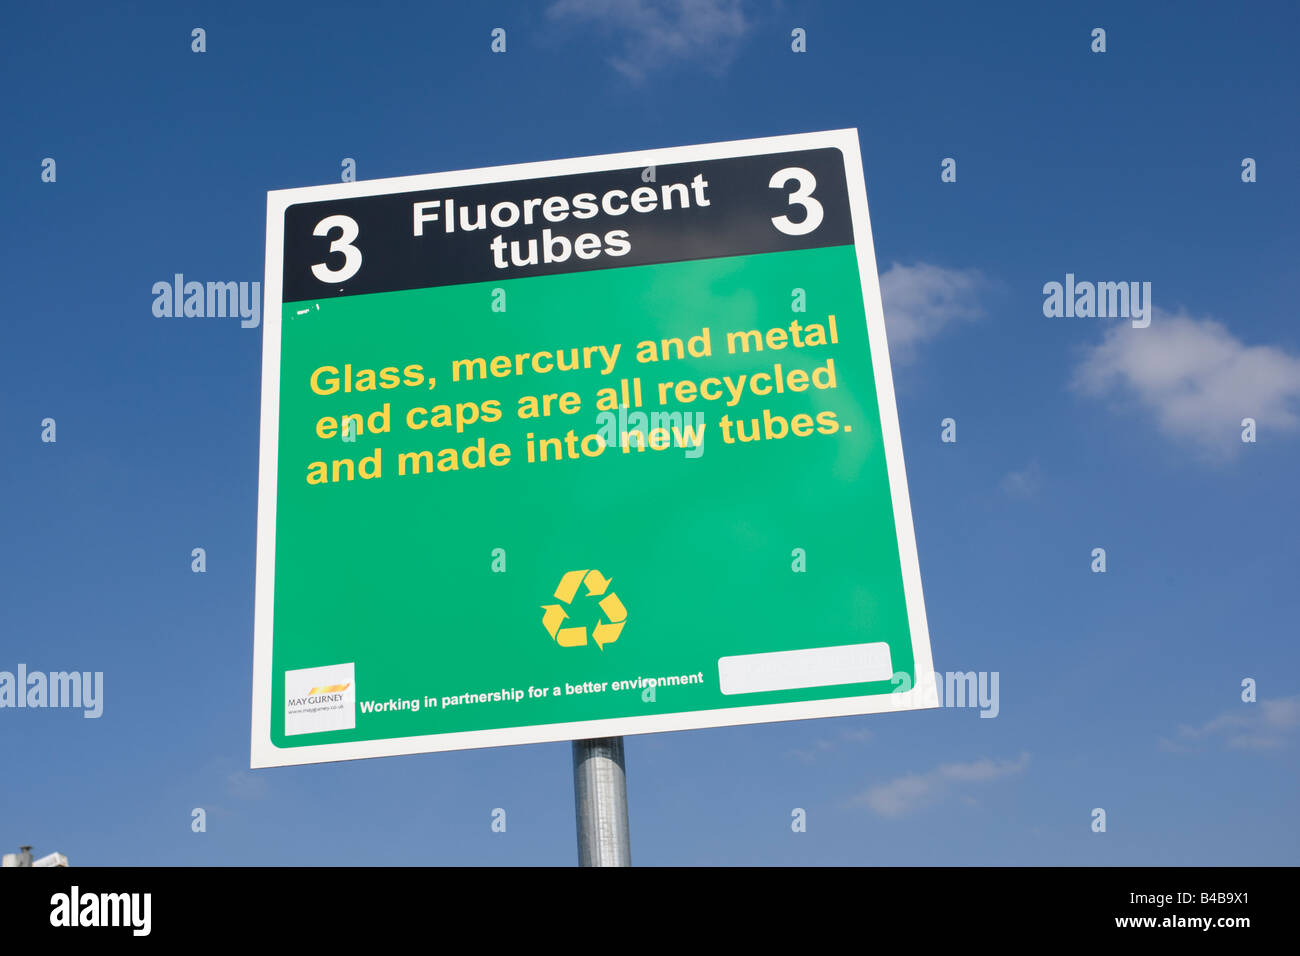 Anuncio de tubo fluorescente interno de reciclaje sitio Granja Wingmoor Stoke Orchard Cheltenham UK Foto de stock